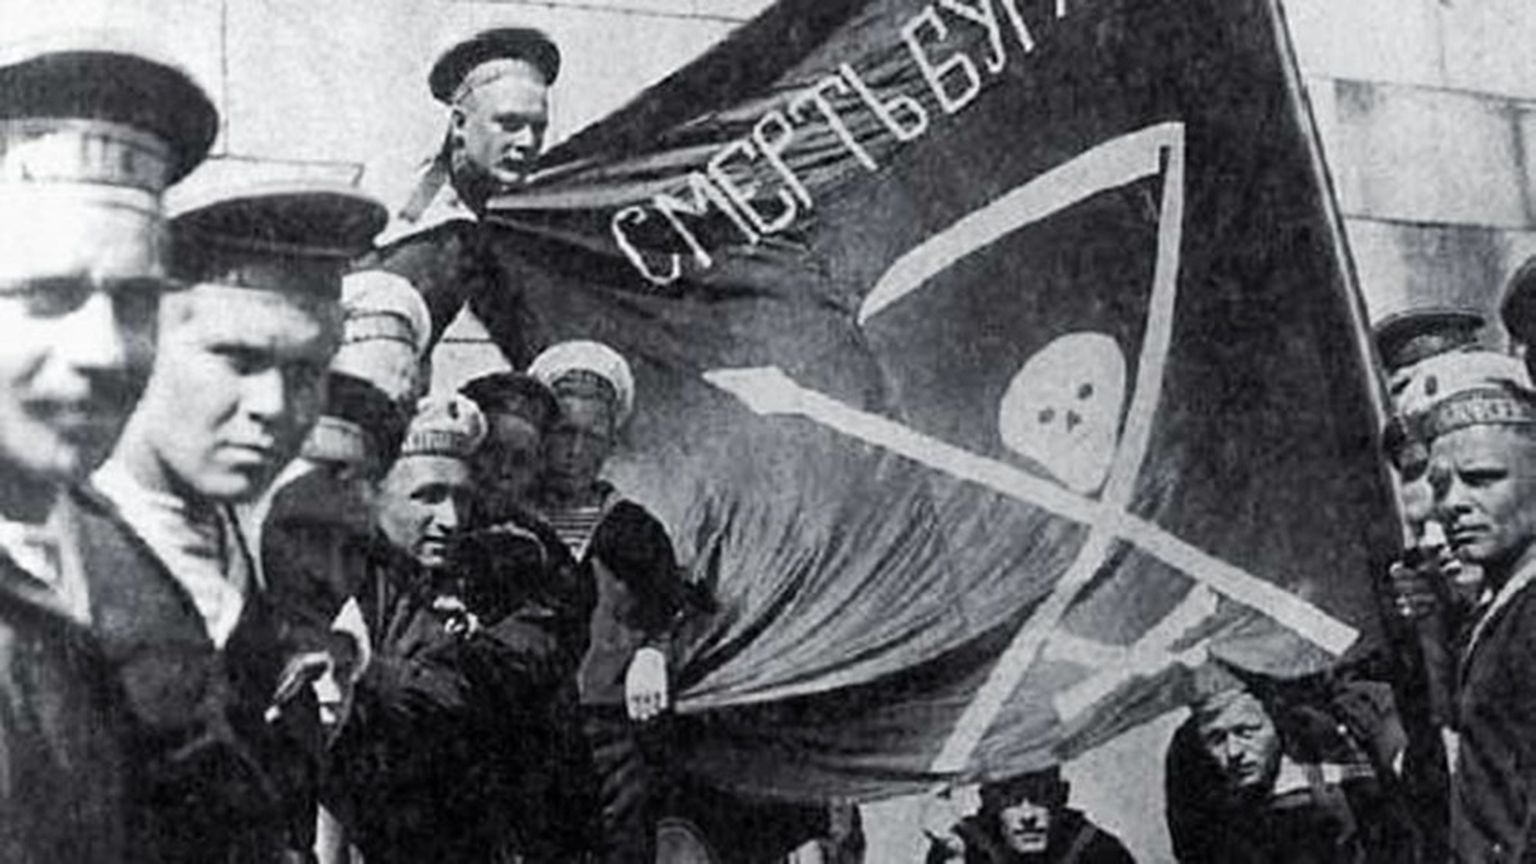 Madrused Naissaare Nõukogude Sotsialistliku Vabariigi lipuga: surm buržuidele!